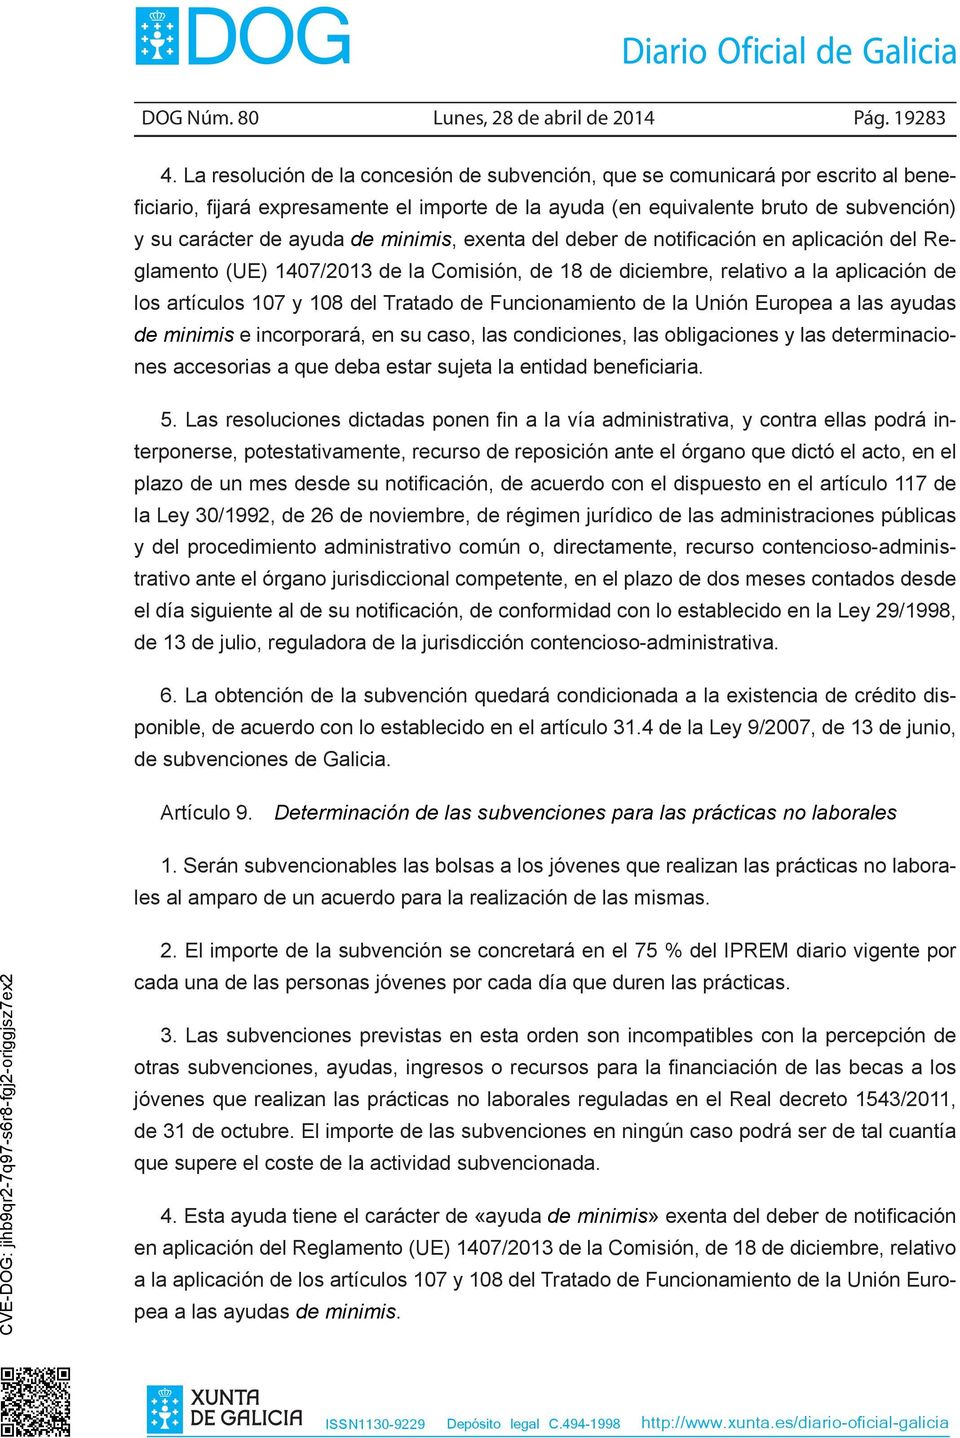 minimis, exenta del deber de notificación en aplicación del Reglamento (UE) 1407/2013 de la Comisión, de 18 de diciembre, relativo a la aplicación de los artículos 107 y 108 del Tratado de